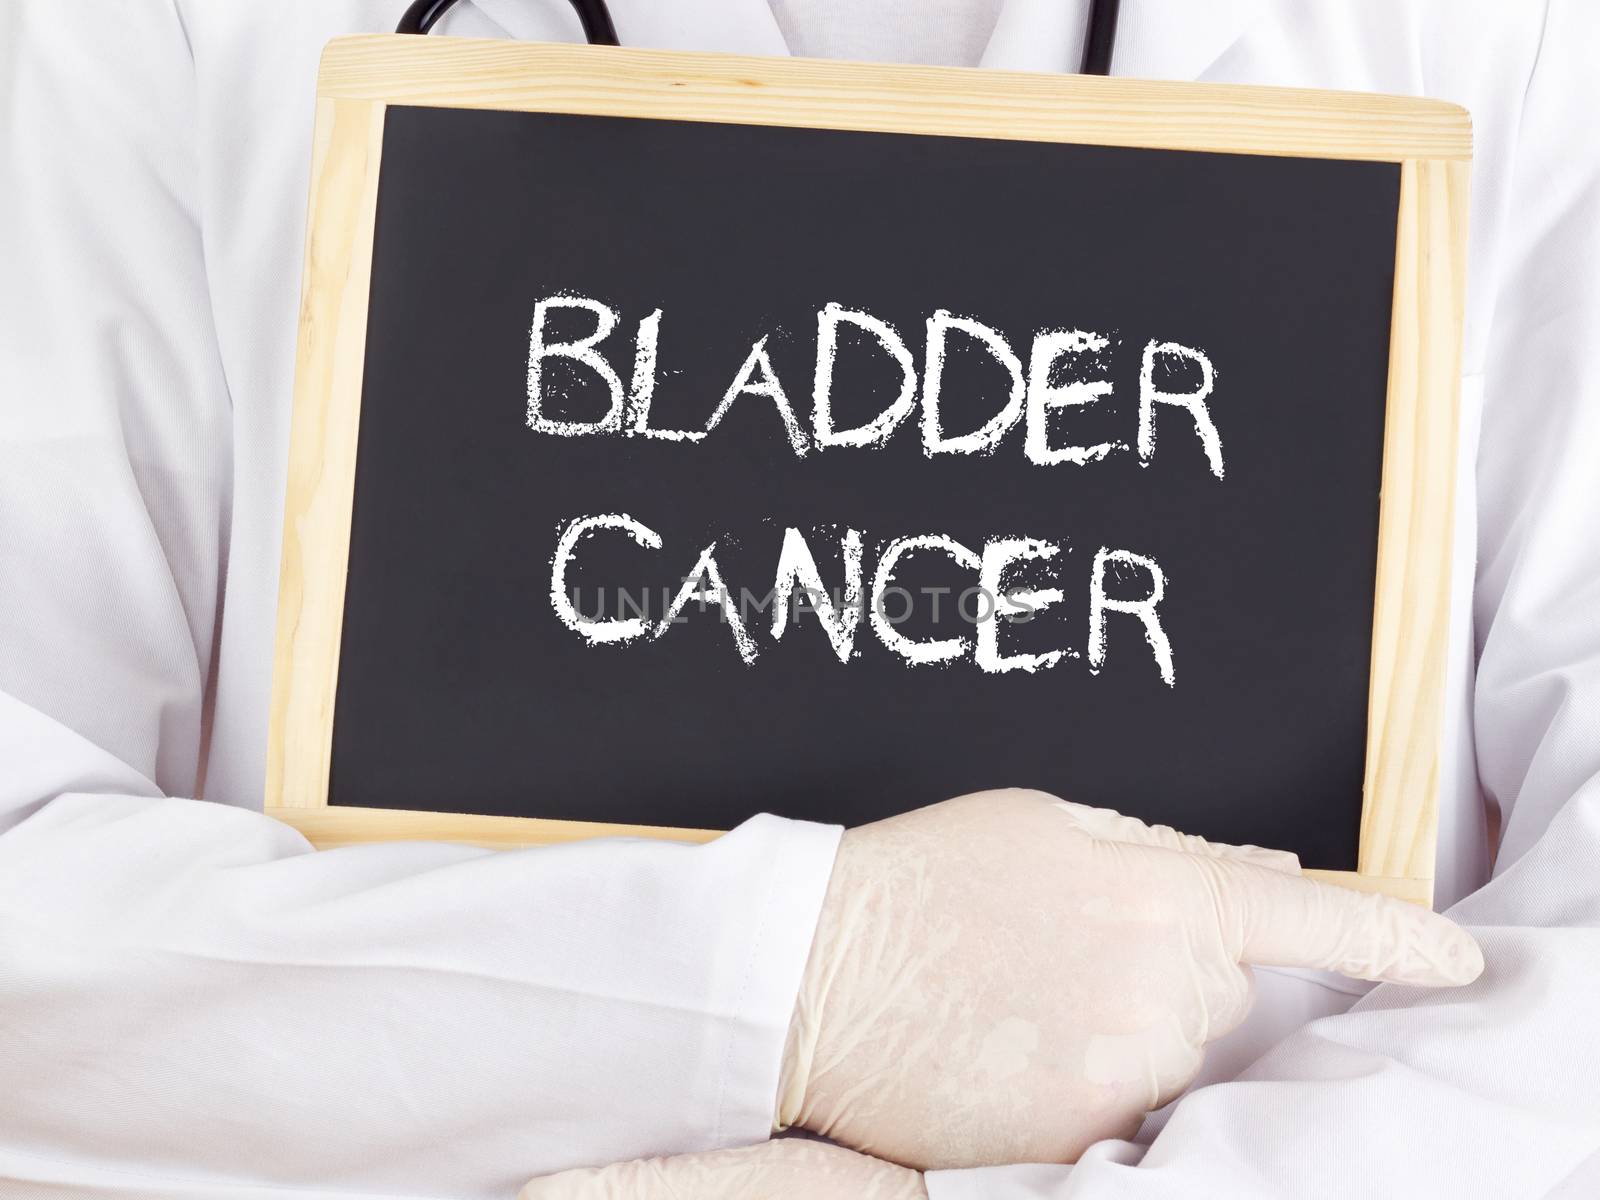 Doctor shows information on blackboard: bladder cancer